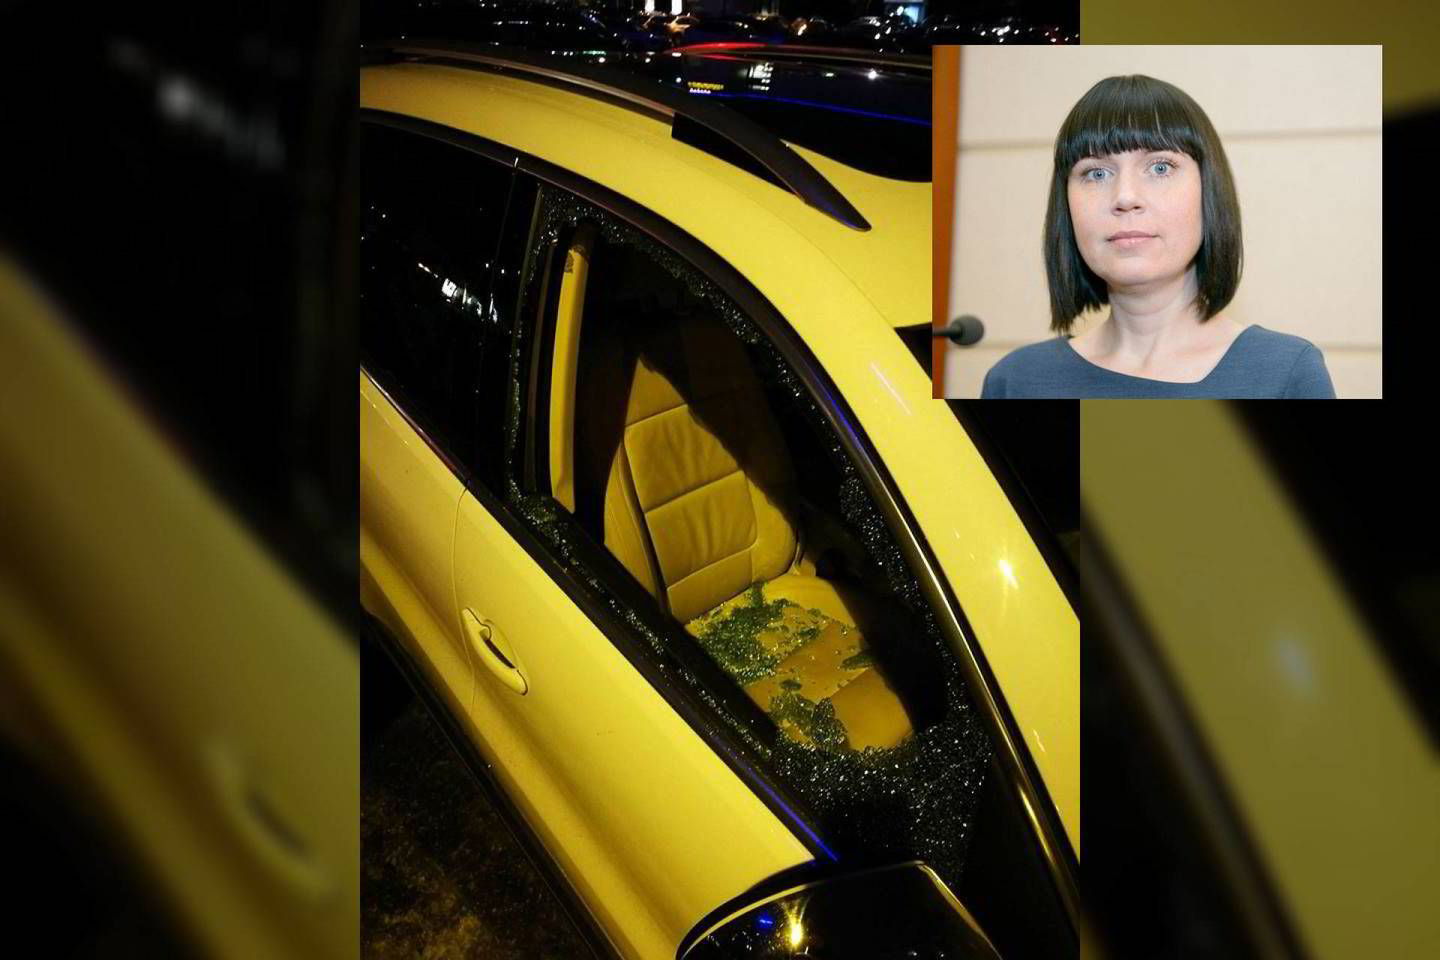  Kol Seimo narė D. Šakalienė žiūrėjo komediją, piktadariai išdaužė jos mašinos stiklą.